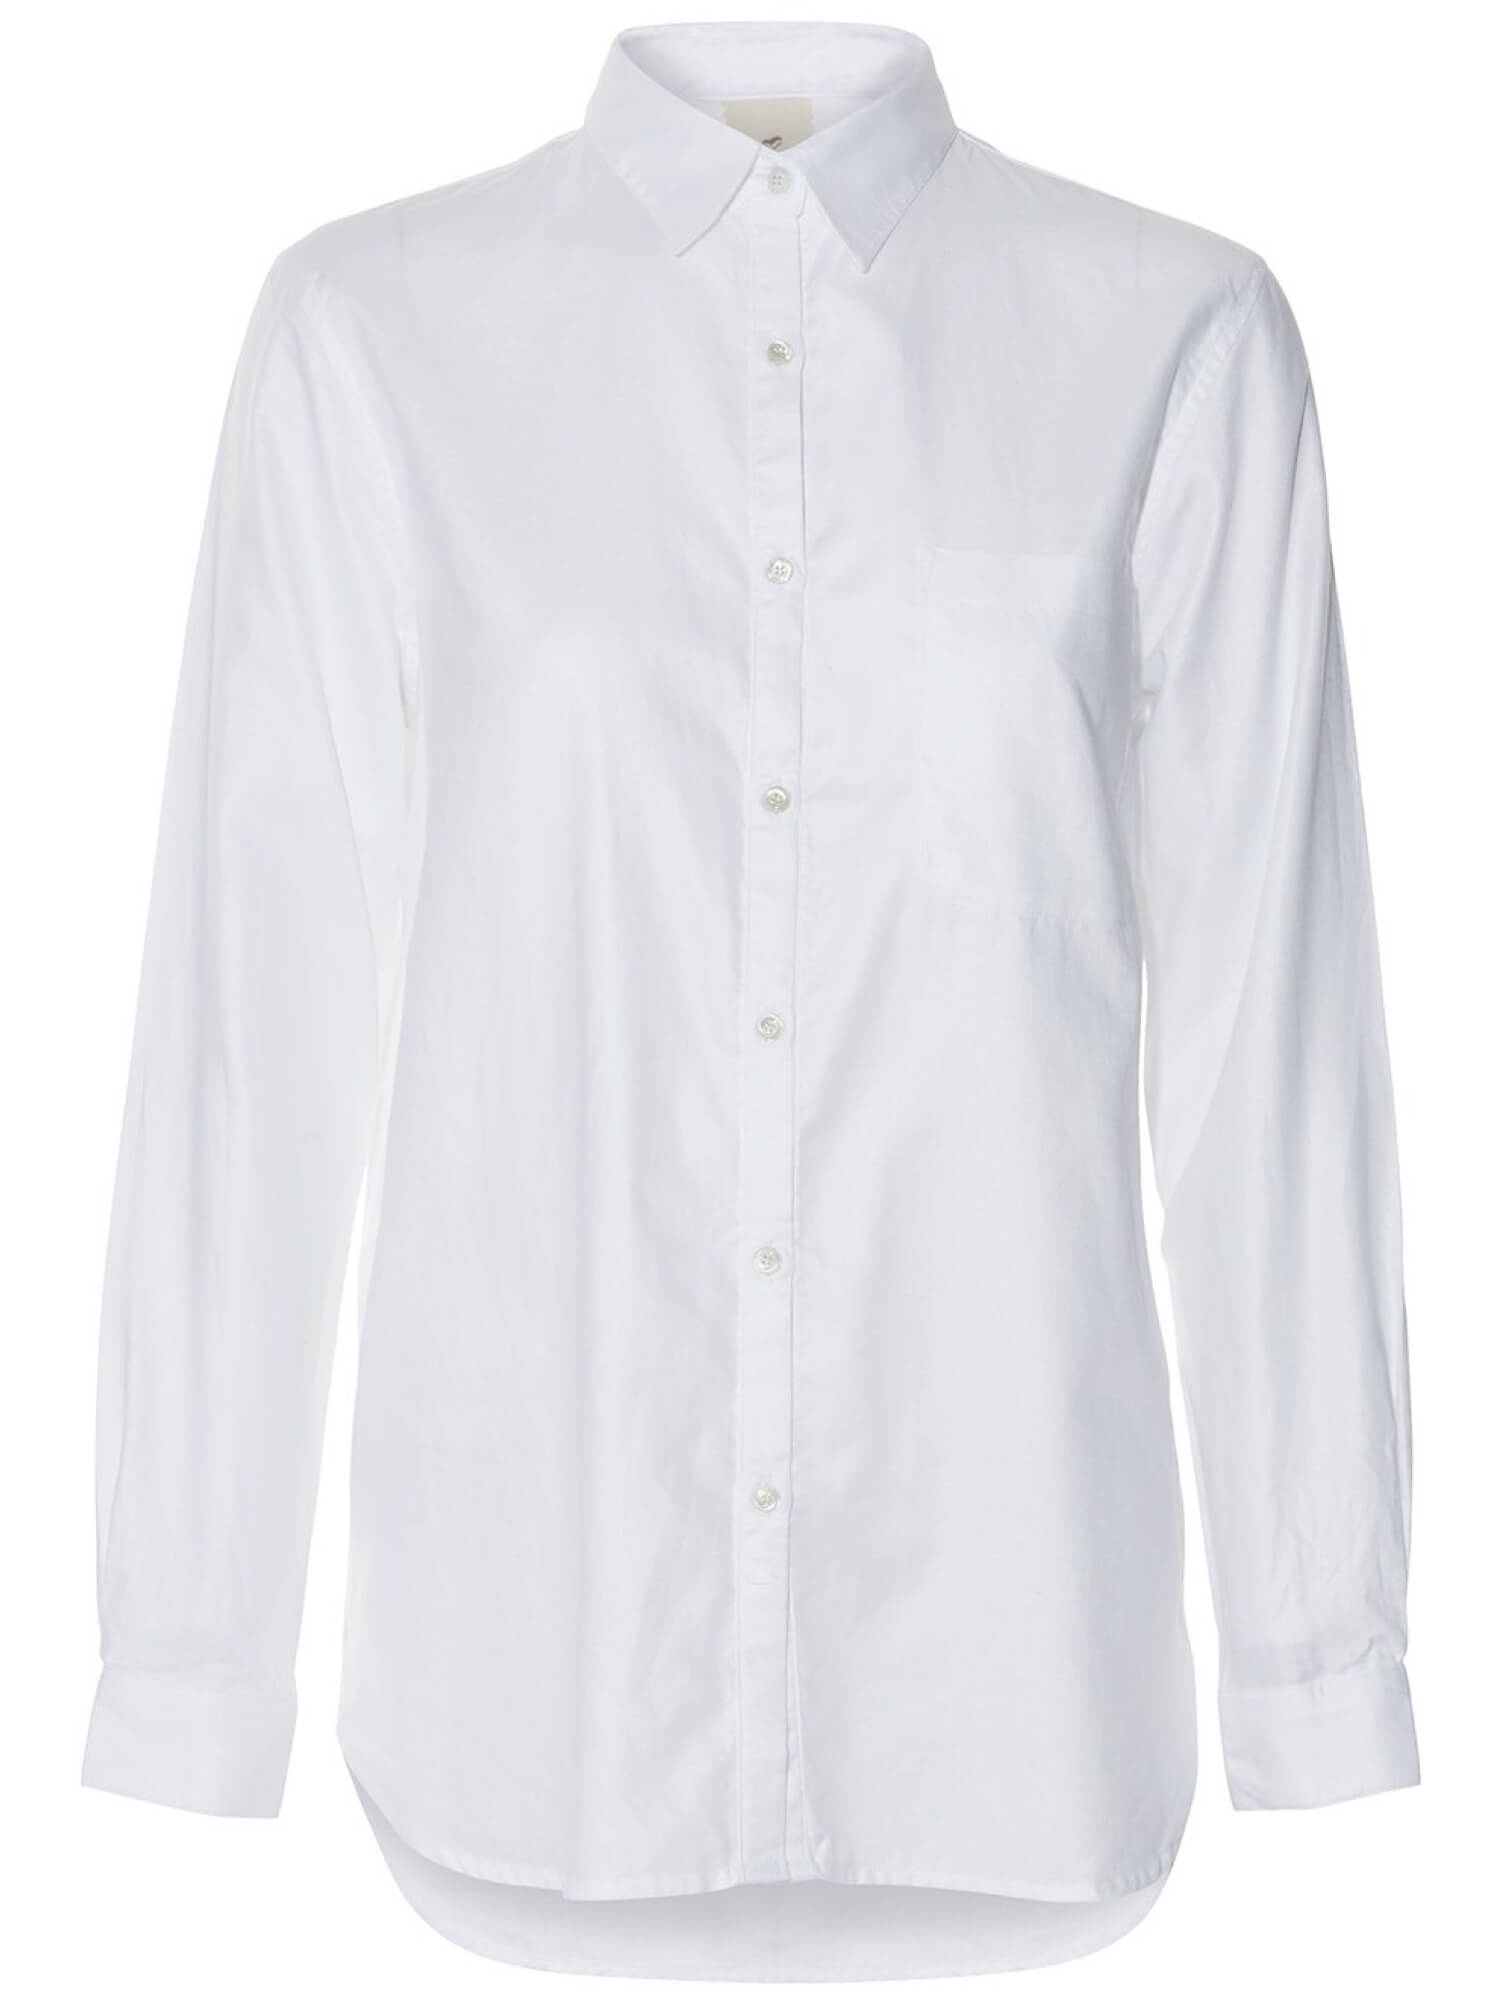 Jeg har erkendt det Mundskyl bestemt Marlis Skjorte i hvid fra Heartmade » køb nu